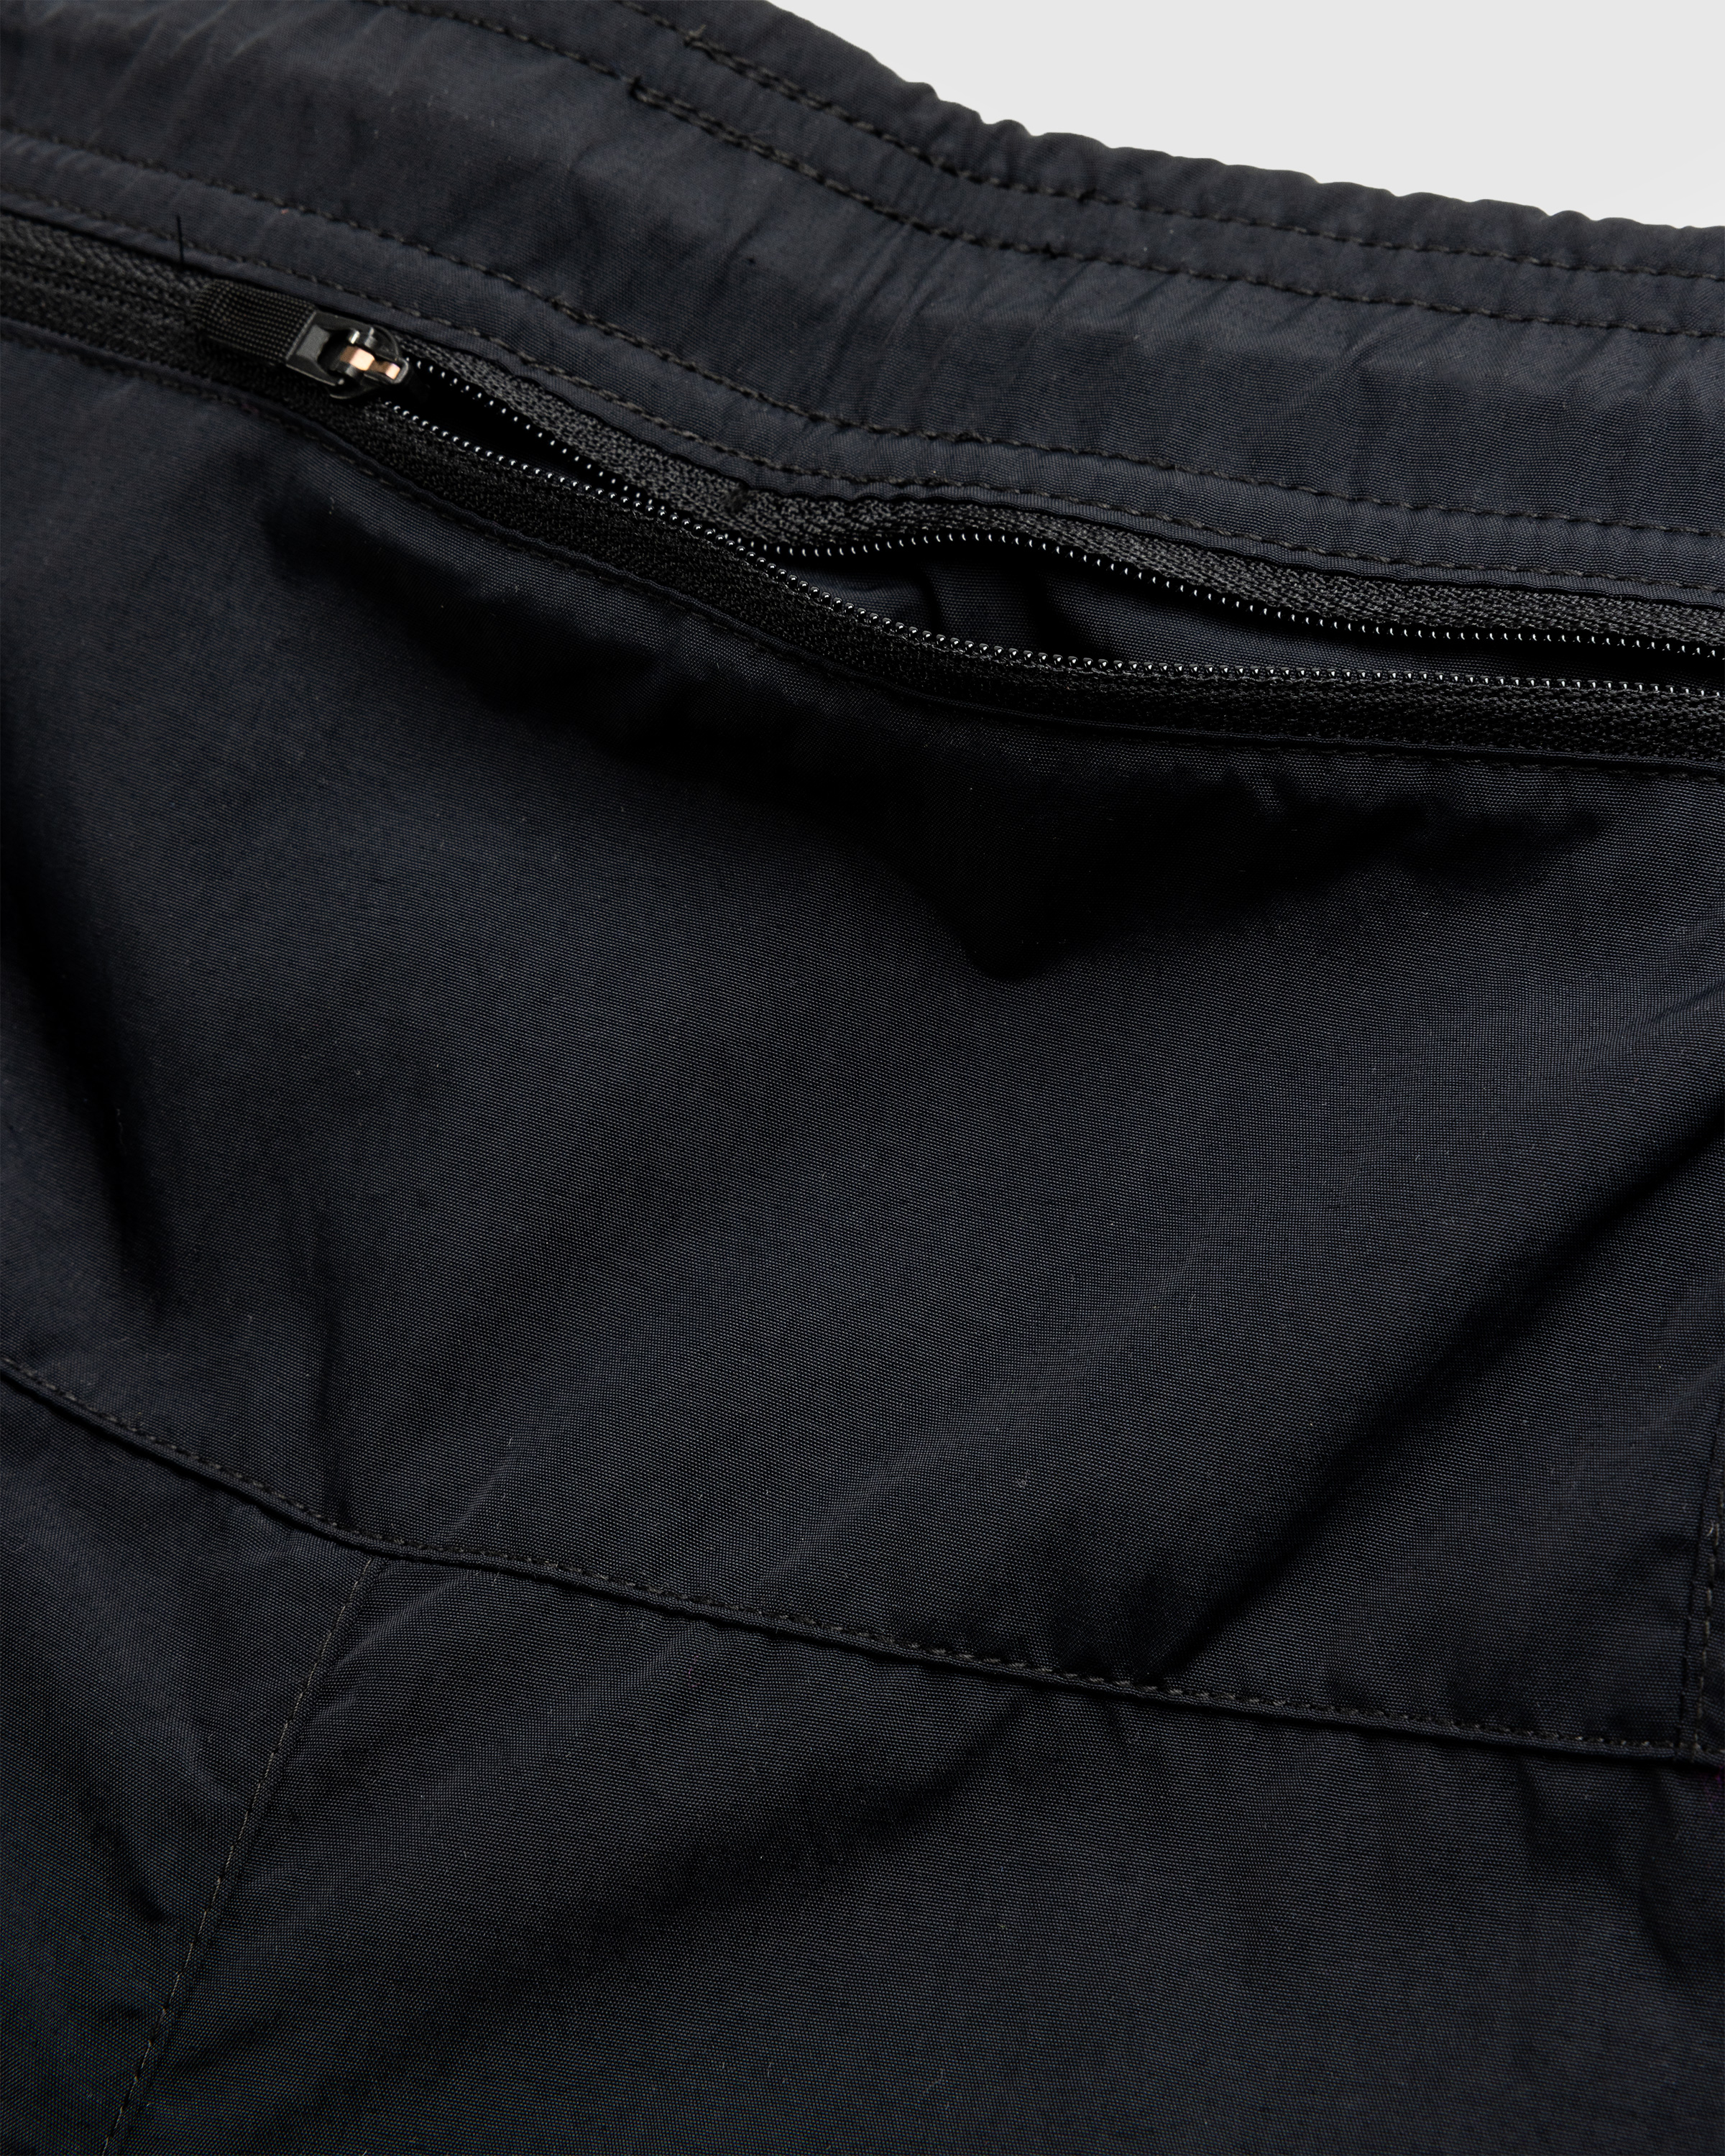 Nike x Patta – Men's Shorts Black - Active Shorts - Black - Image 8